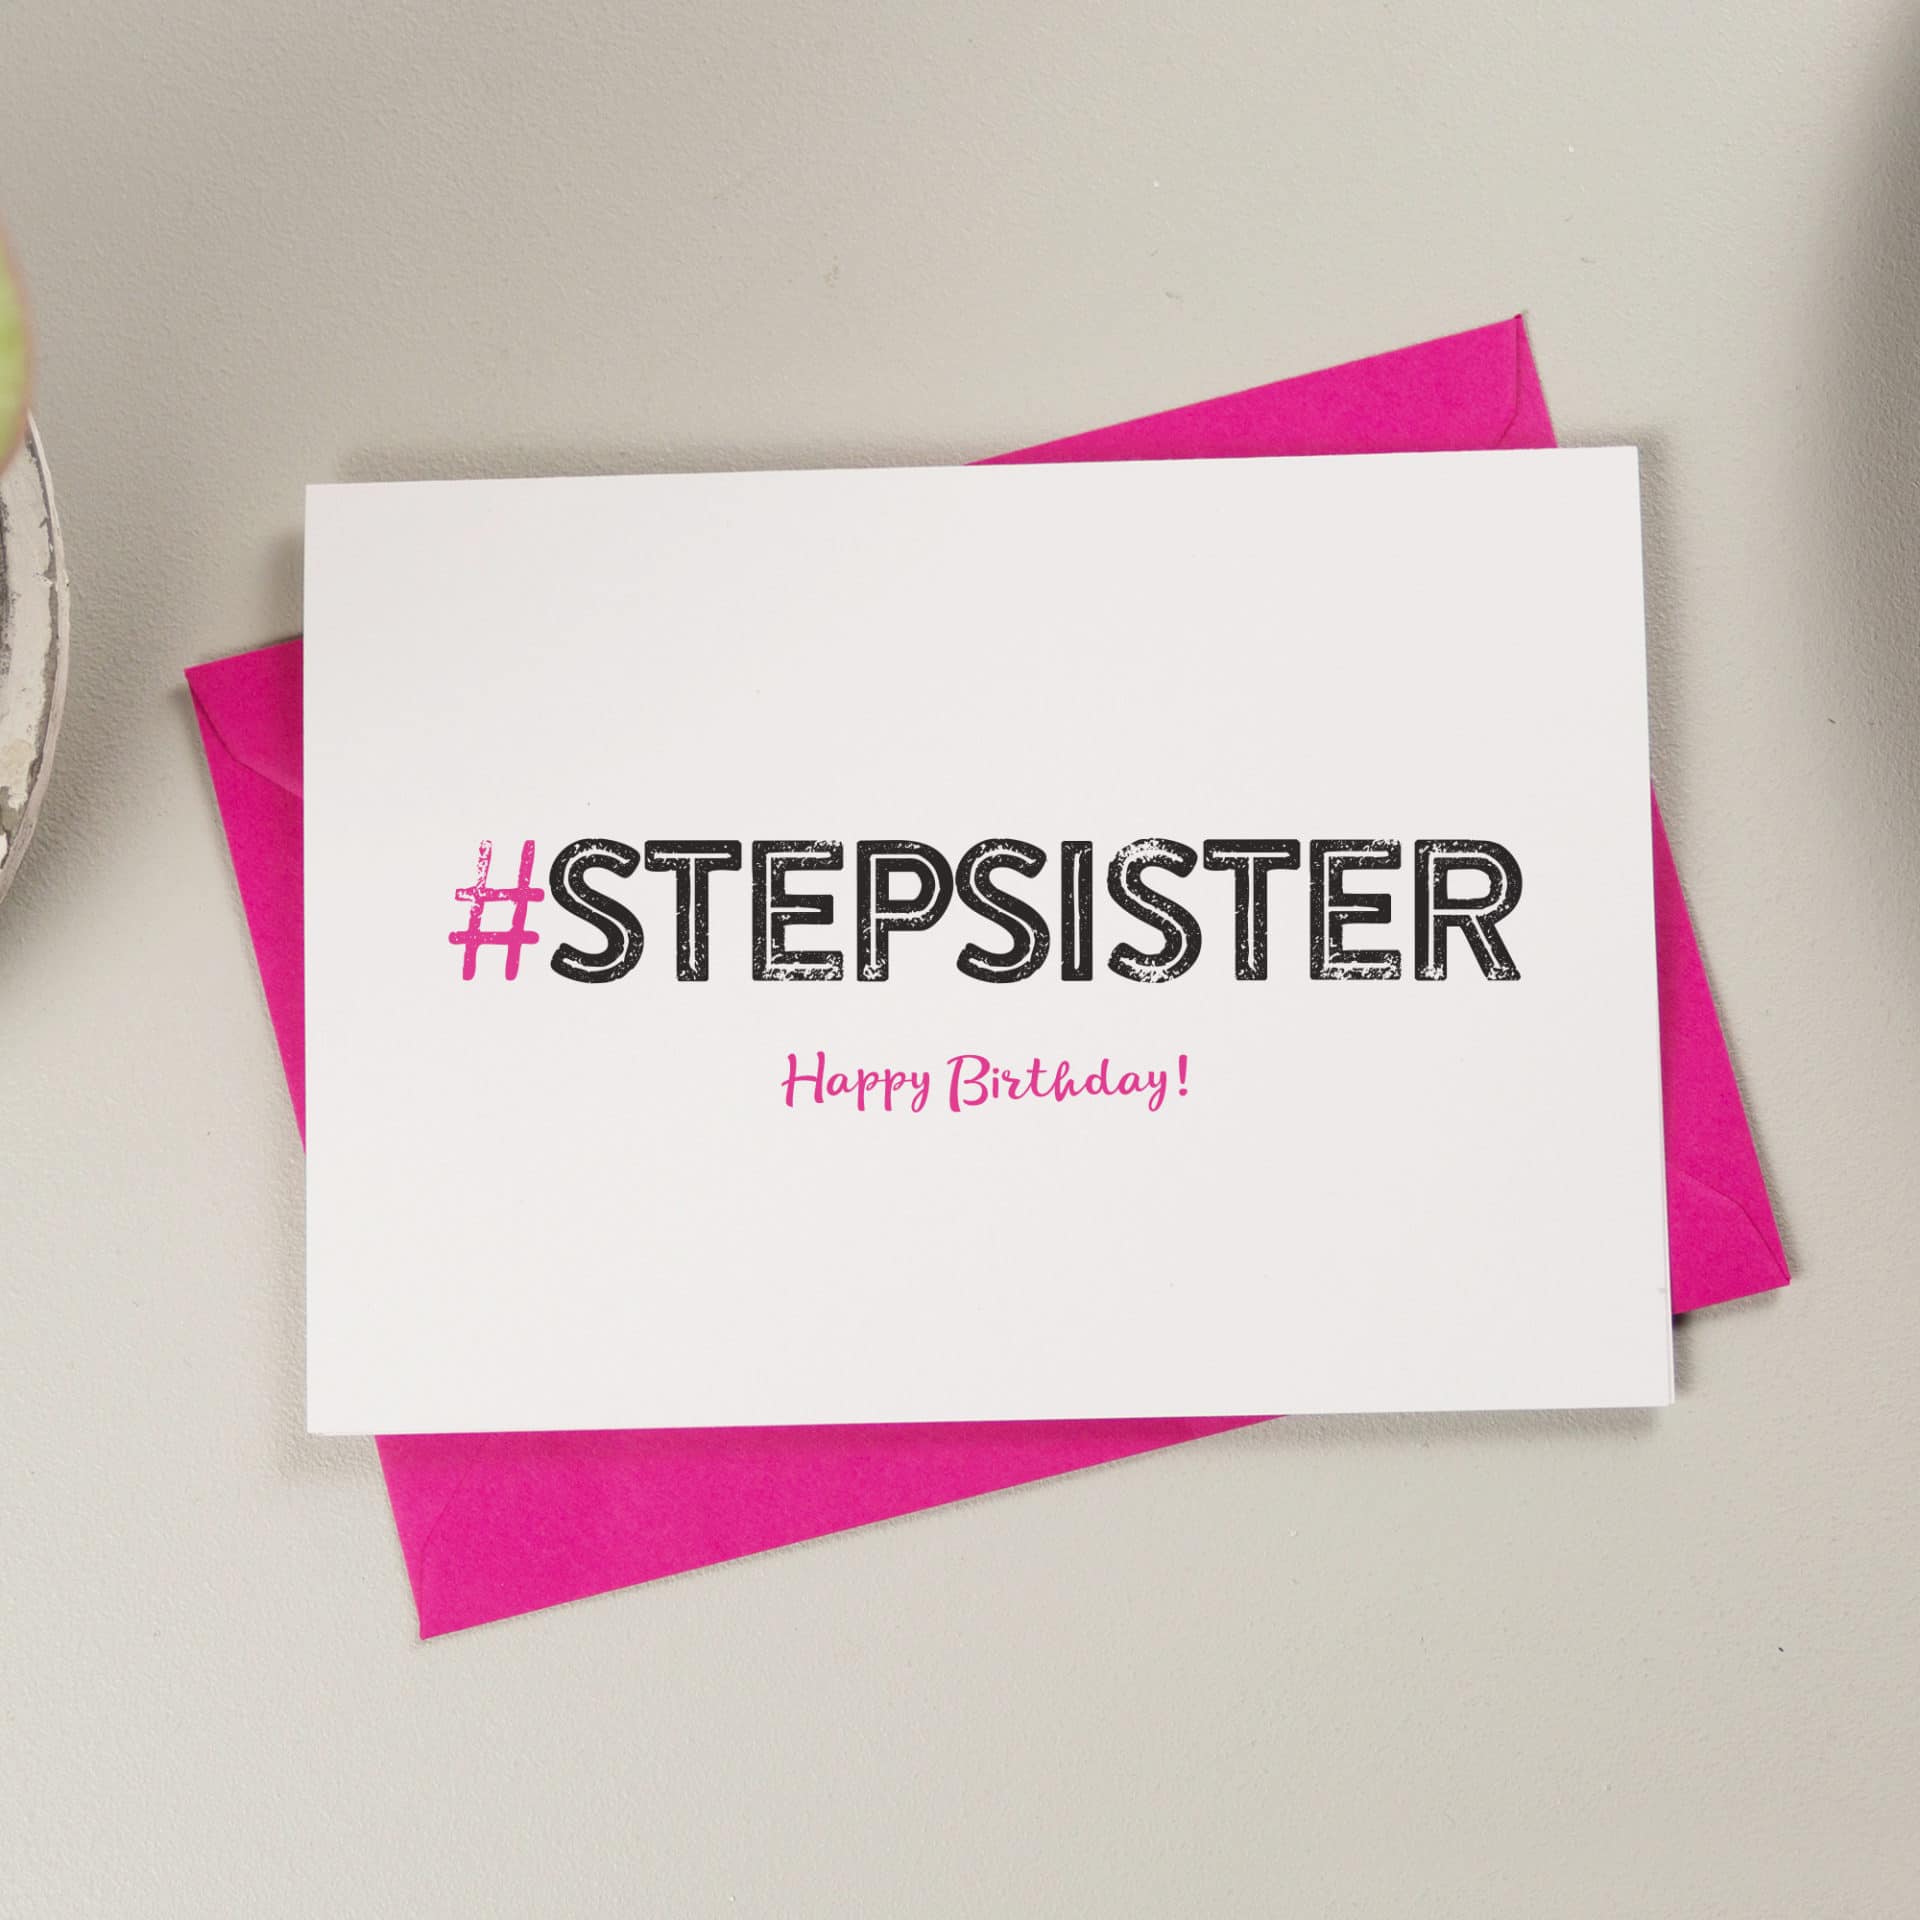 Hashtag Stepsister Birthday Card A Is For Alphabet Birthday Card 